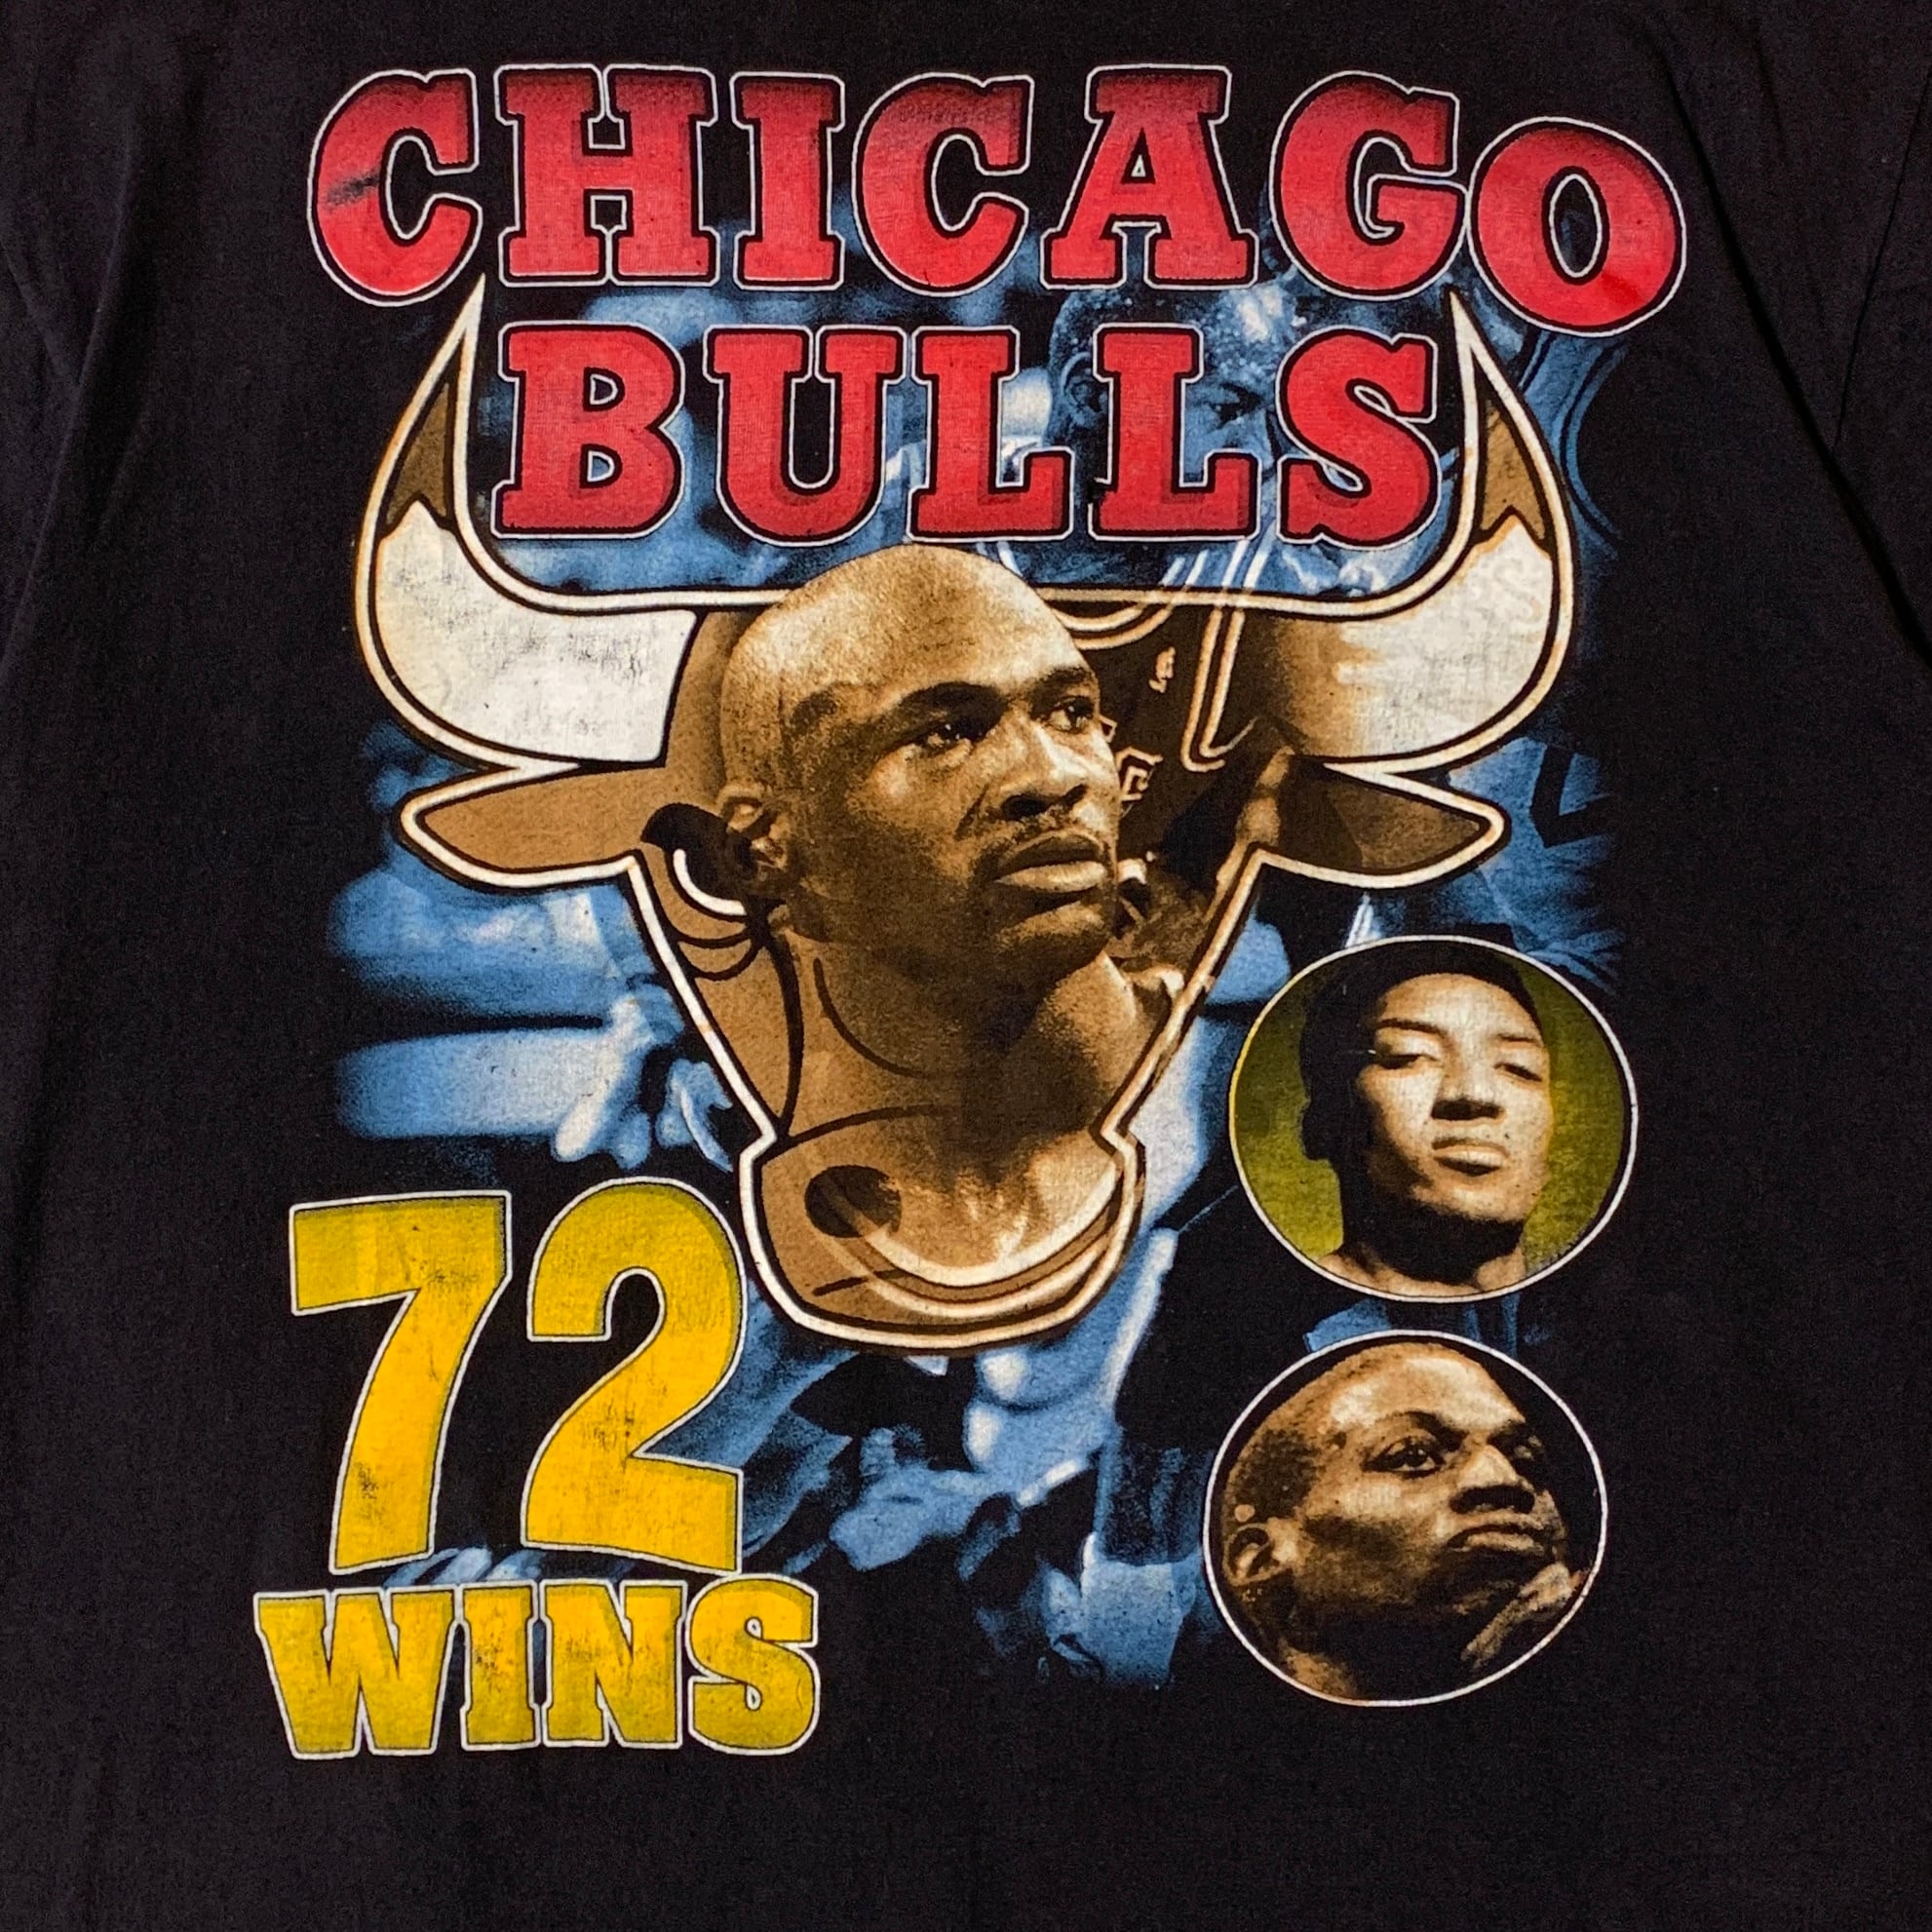 ⭕️【NBA】 シカゴ・ブルズ (Chicago Bulls)  Tee